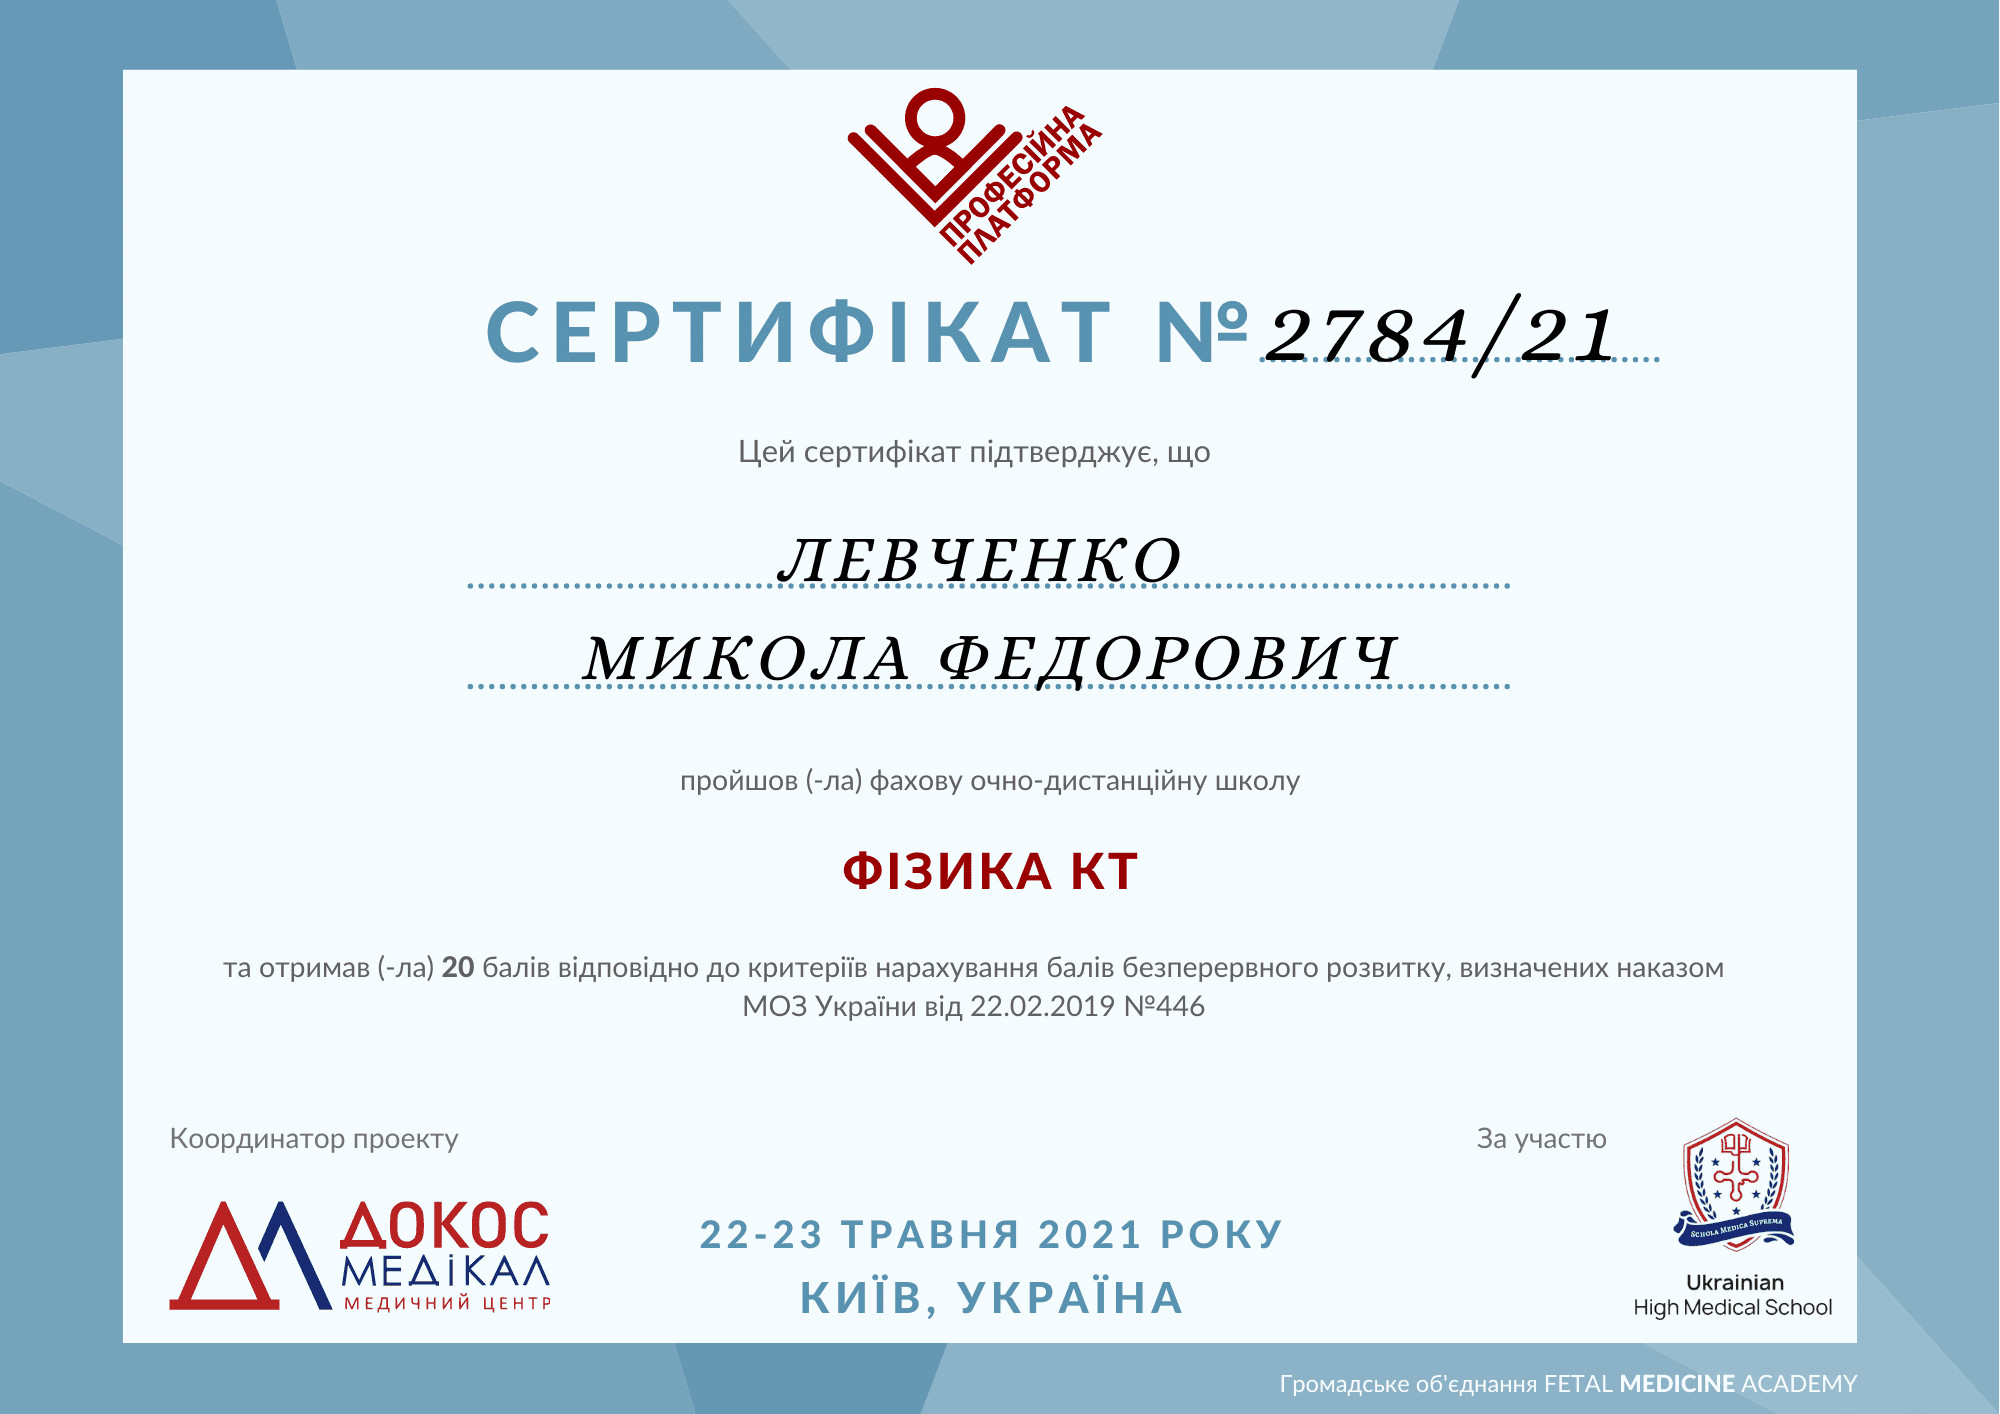 Сертификат об участии в специализированной очно-дистанционной школе